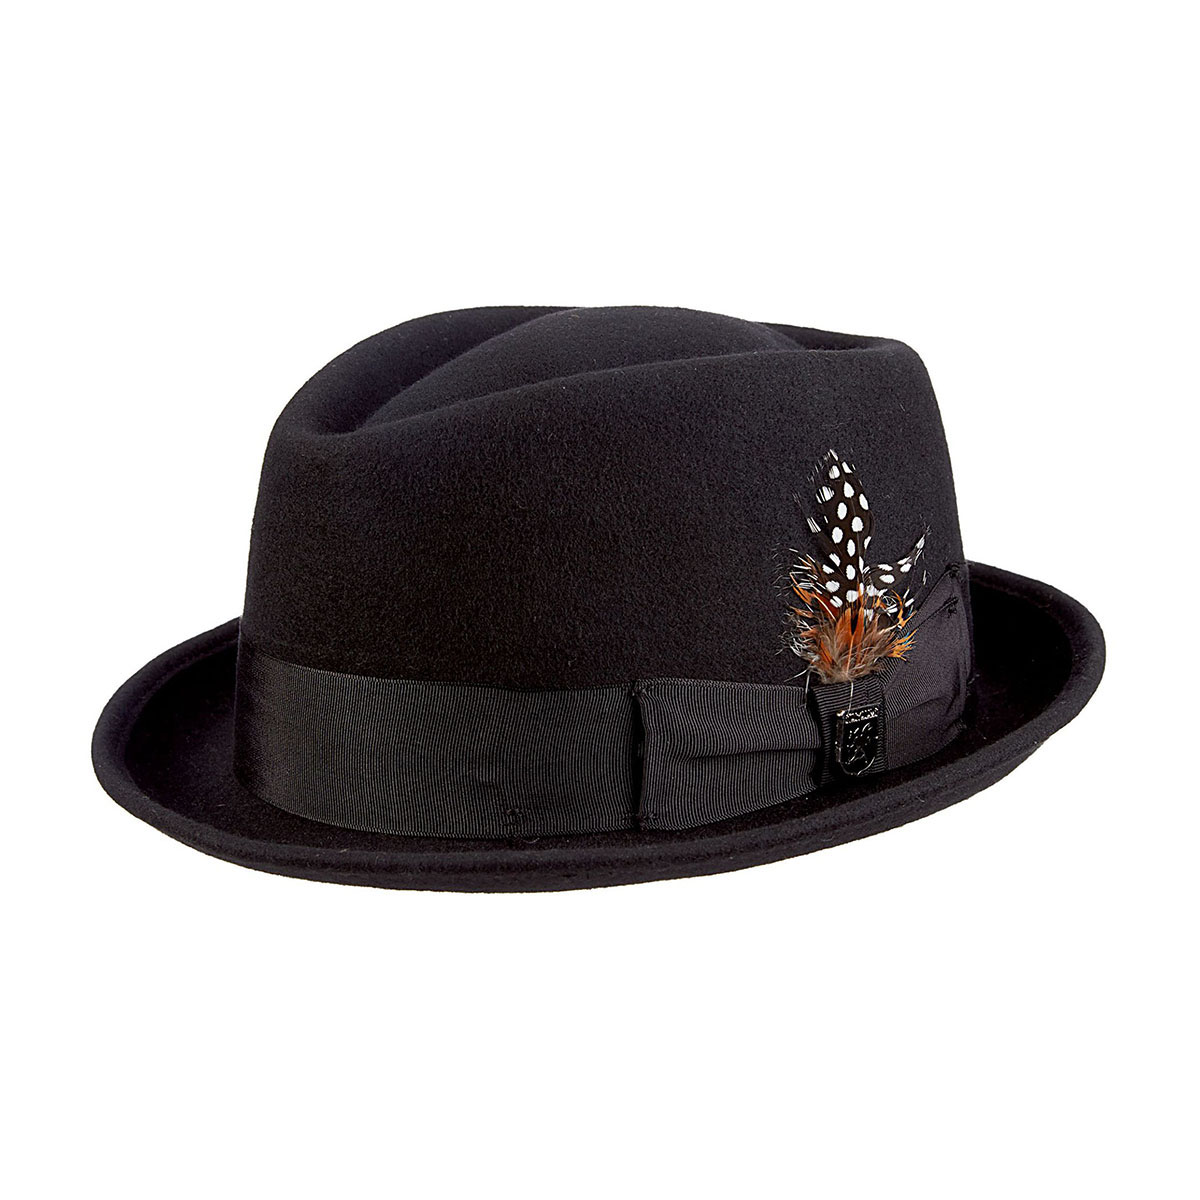 Men's Hats | Men's Accessories | Black Wool Hat | Stacy Adams Monroe ...